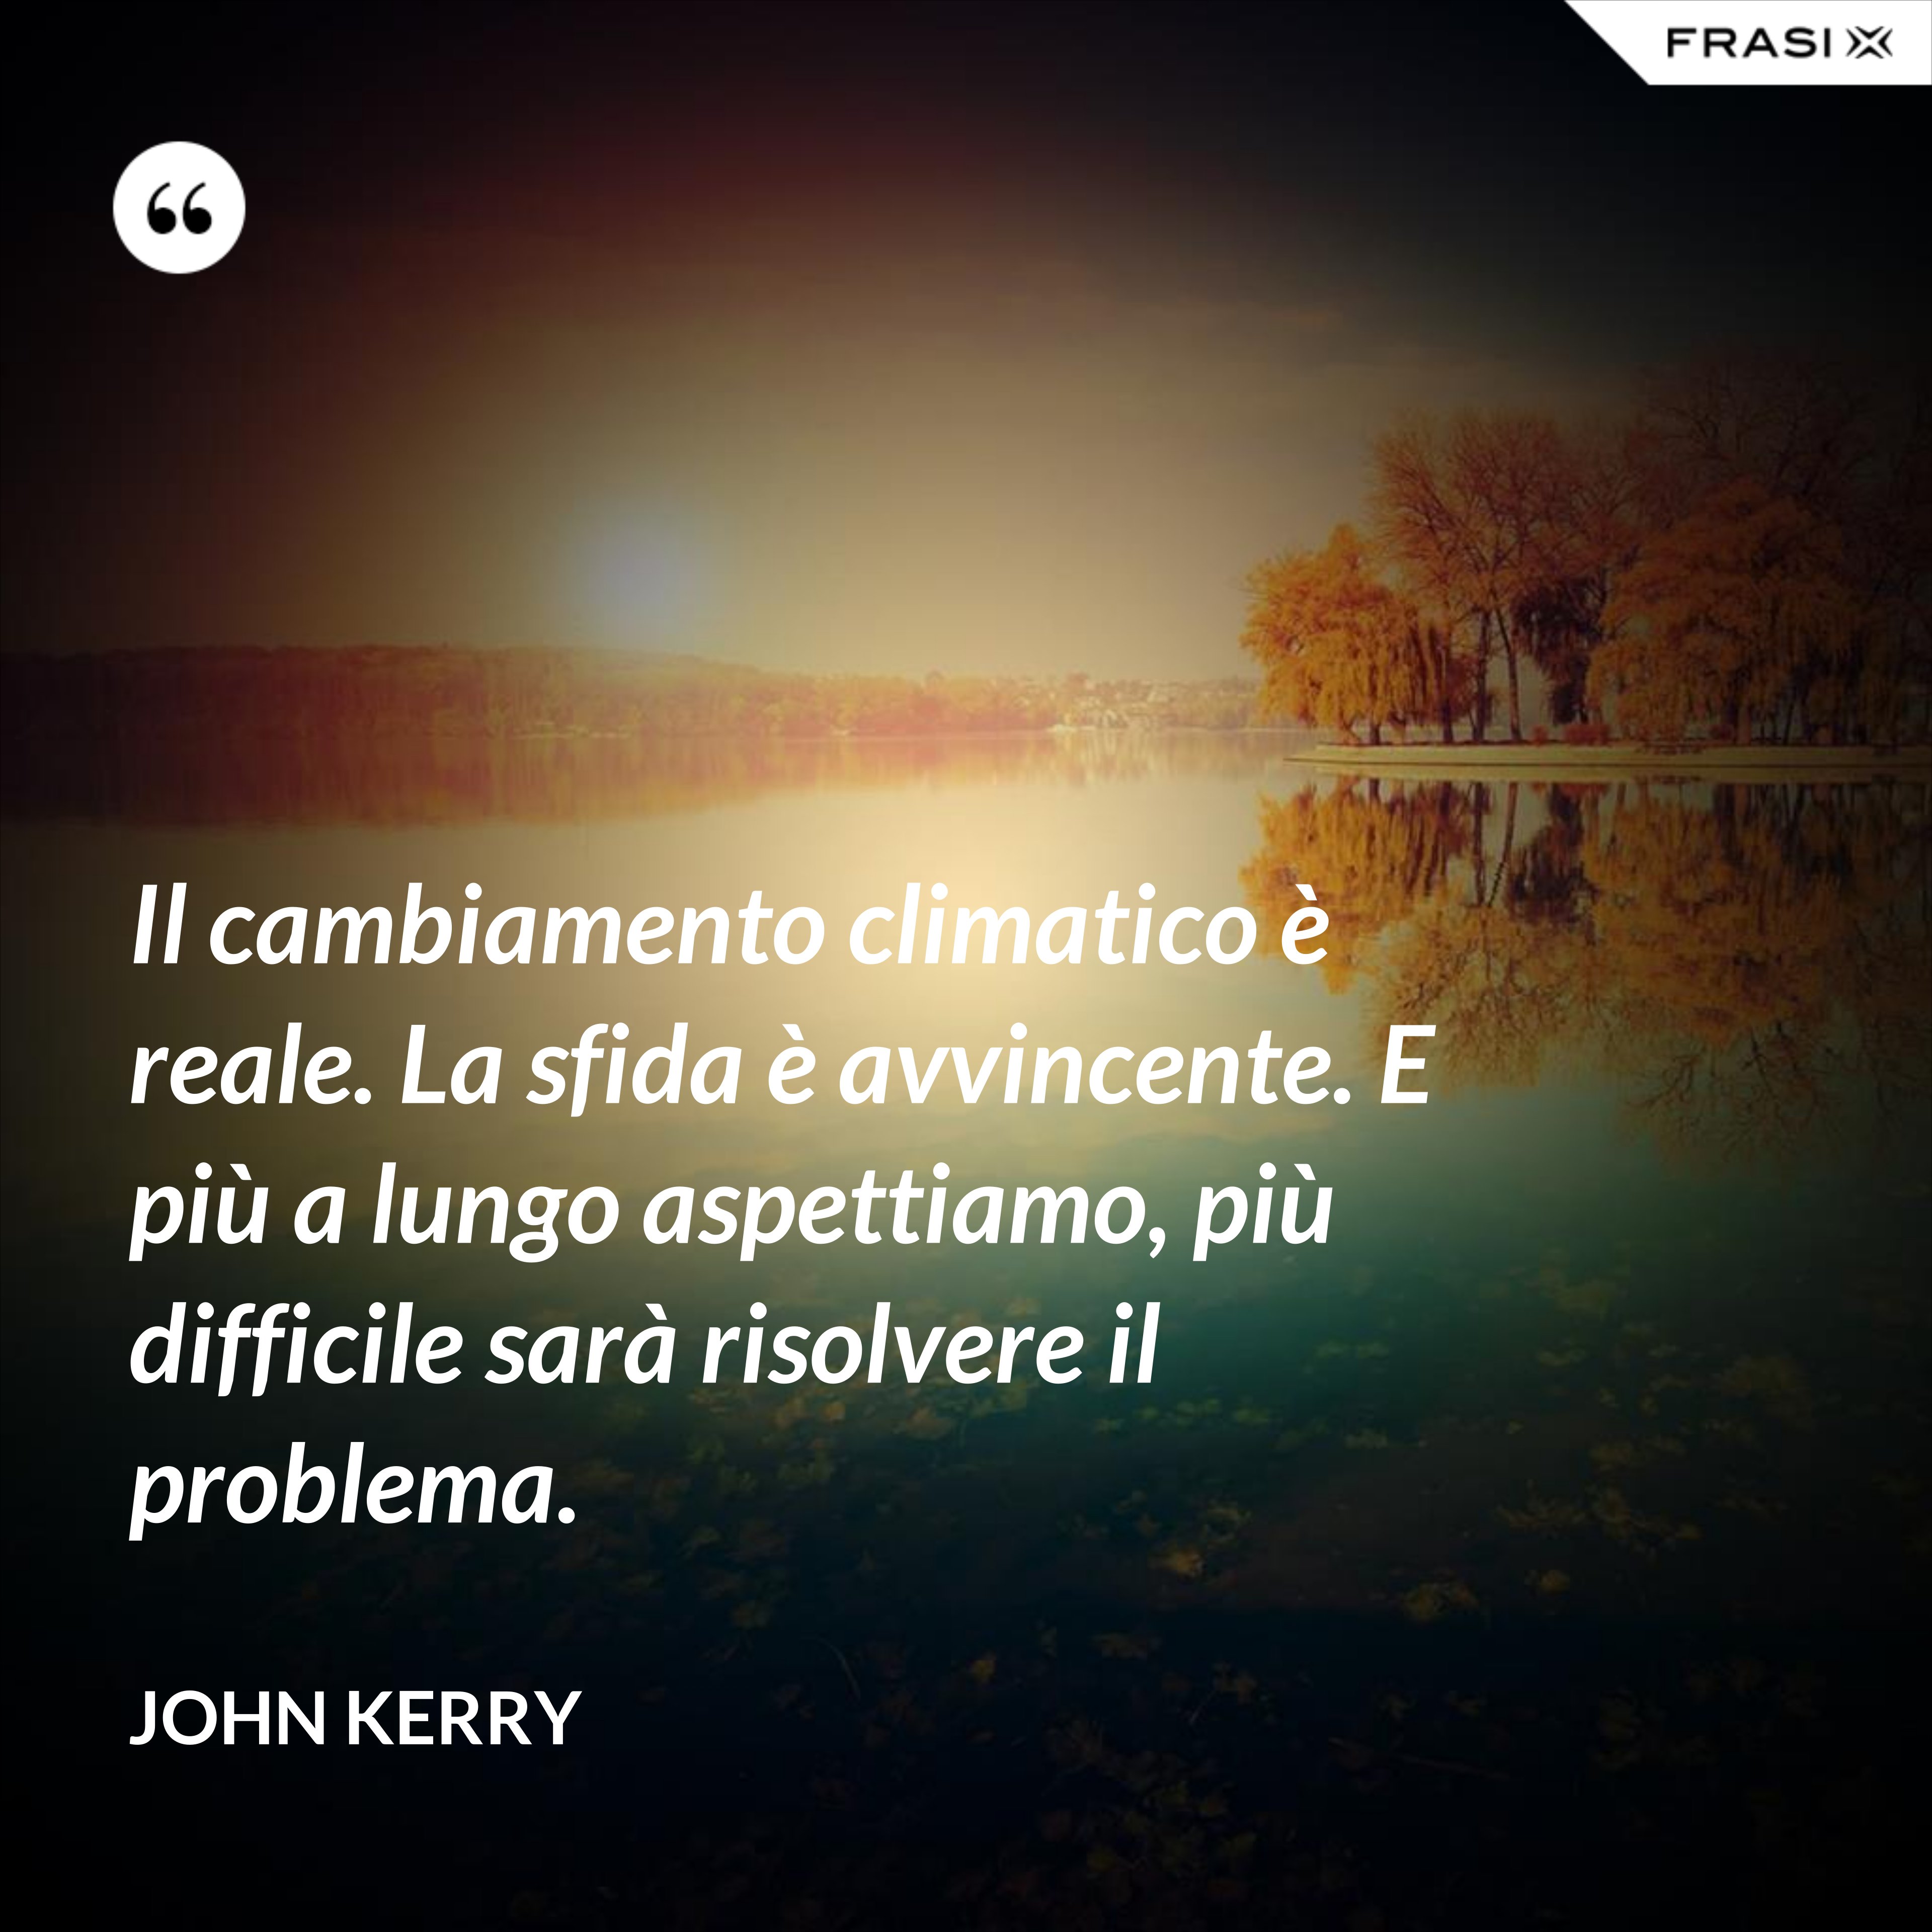 Il cambiamento climatico è reale. La sfida è avvincente. E più a lungo aspettiamo, più difficile sarà risolvere il problema. - John Kerry